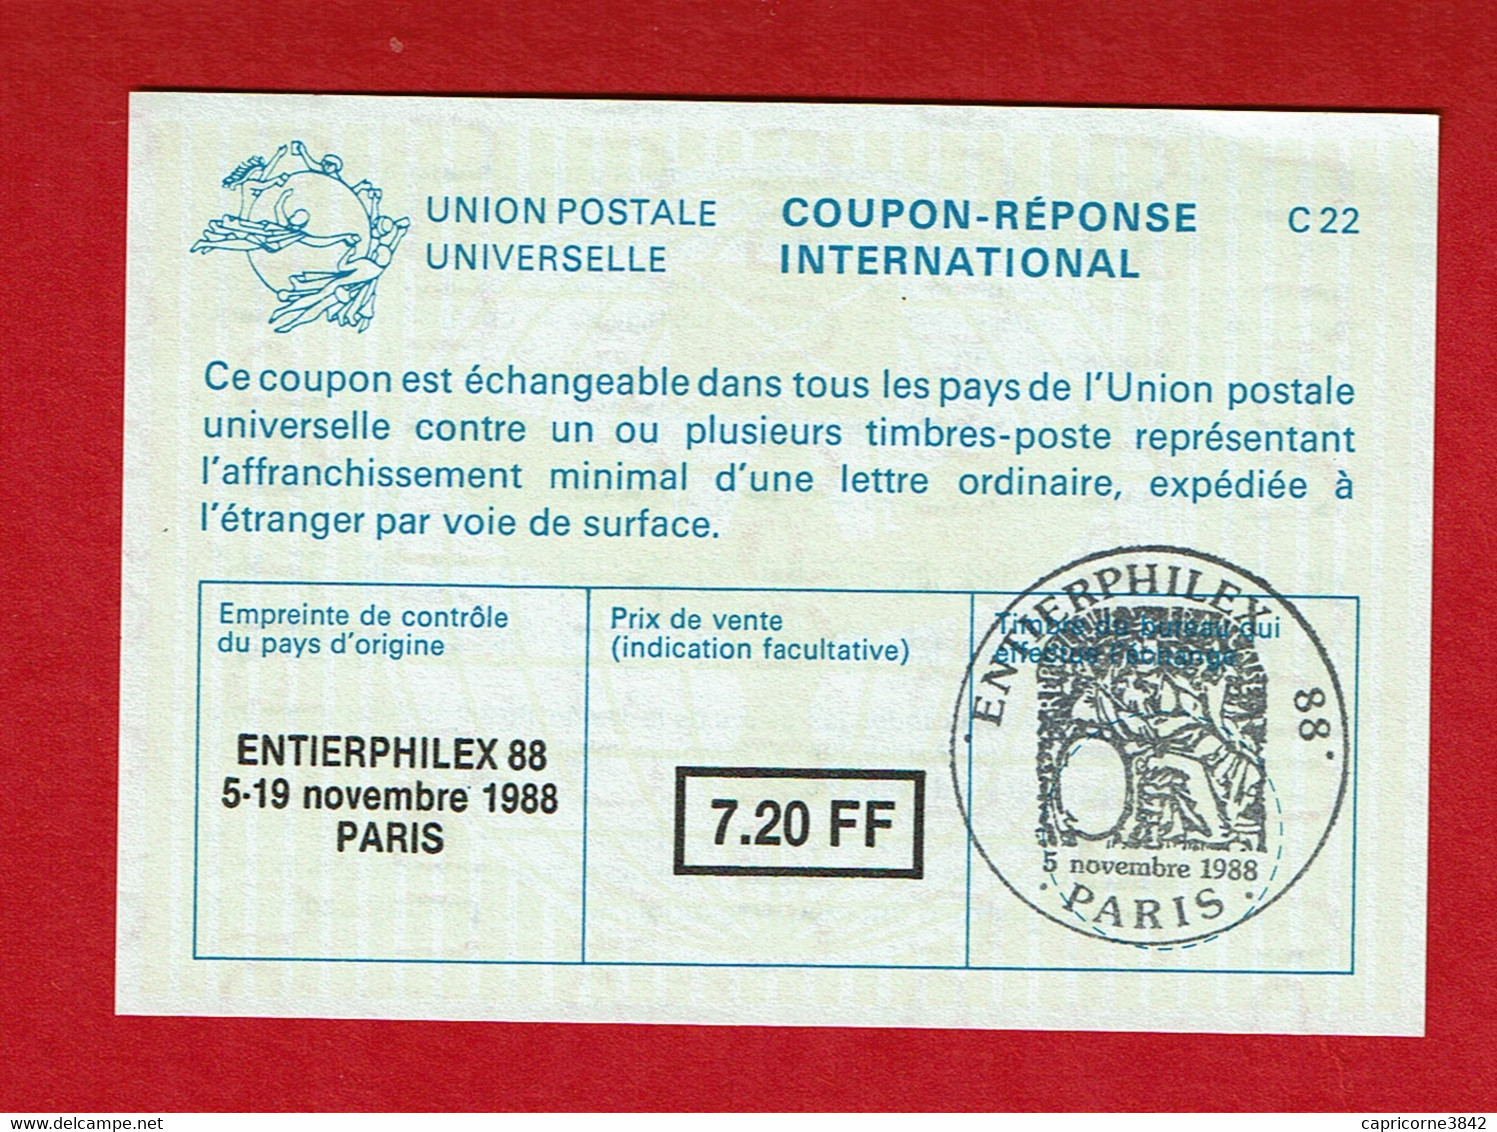 1988 - COUPON REPONSE INTERNATIONAL - Cachet Temporaire "ENTIERPHILEX -88" - Antwoordbons